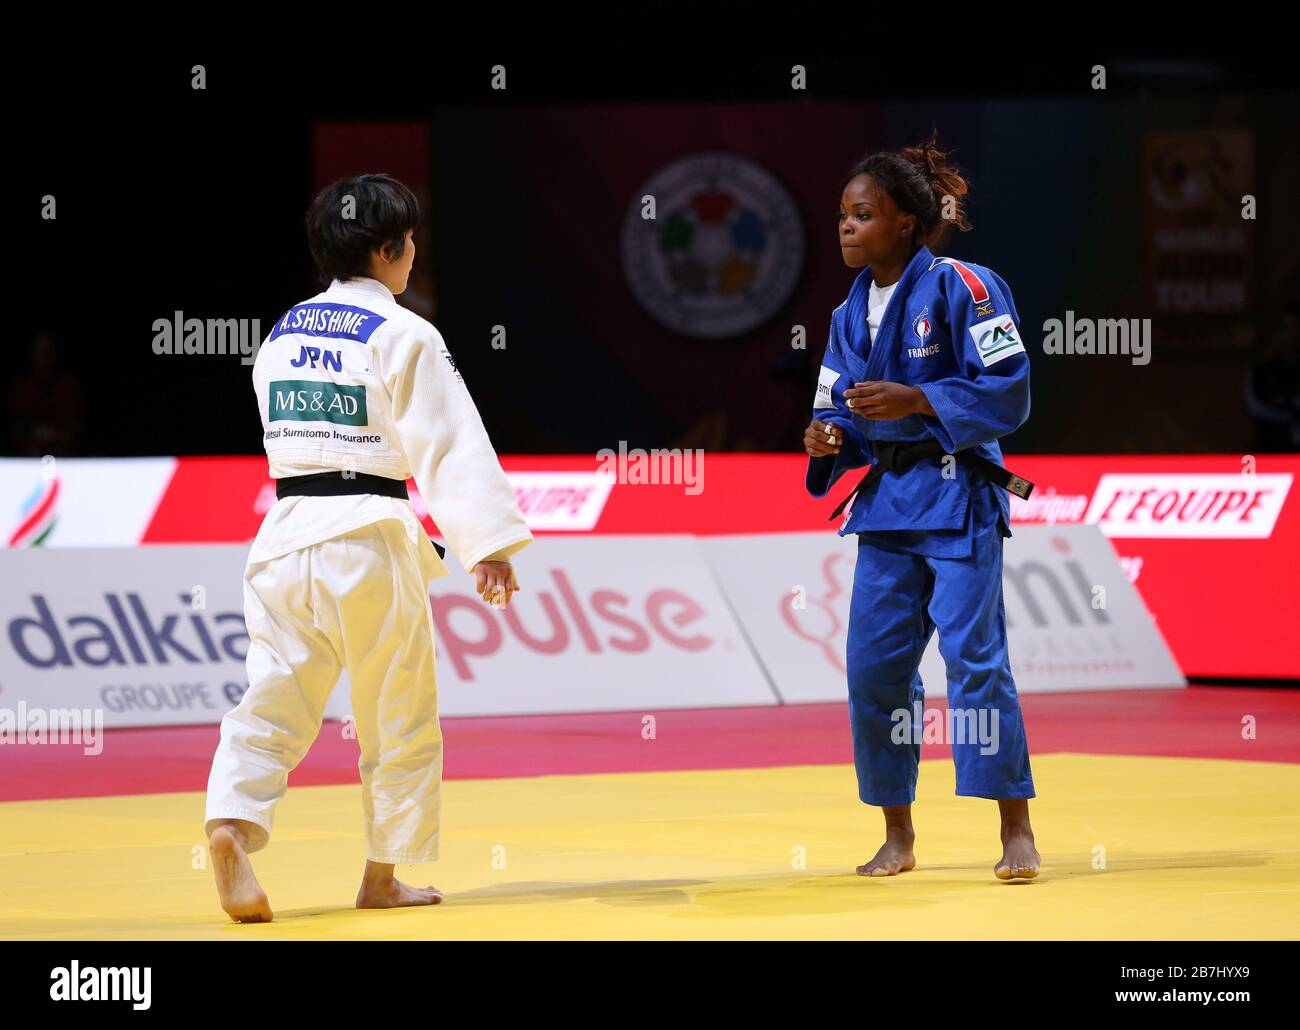 Paris, France - 08 février 2020: Ai Shishime pour le Japon contre Astrid Gneto pour la France, femmes - 52 kg, médaille de bronze Match (crédit: Mickael Chavet) Banque D'Images